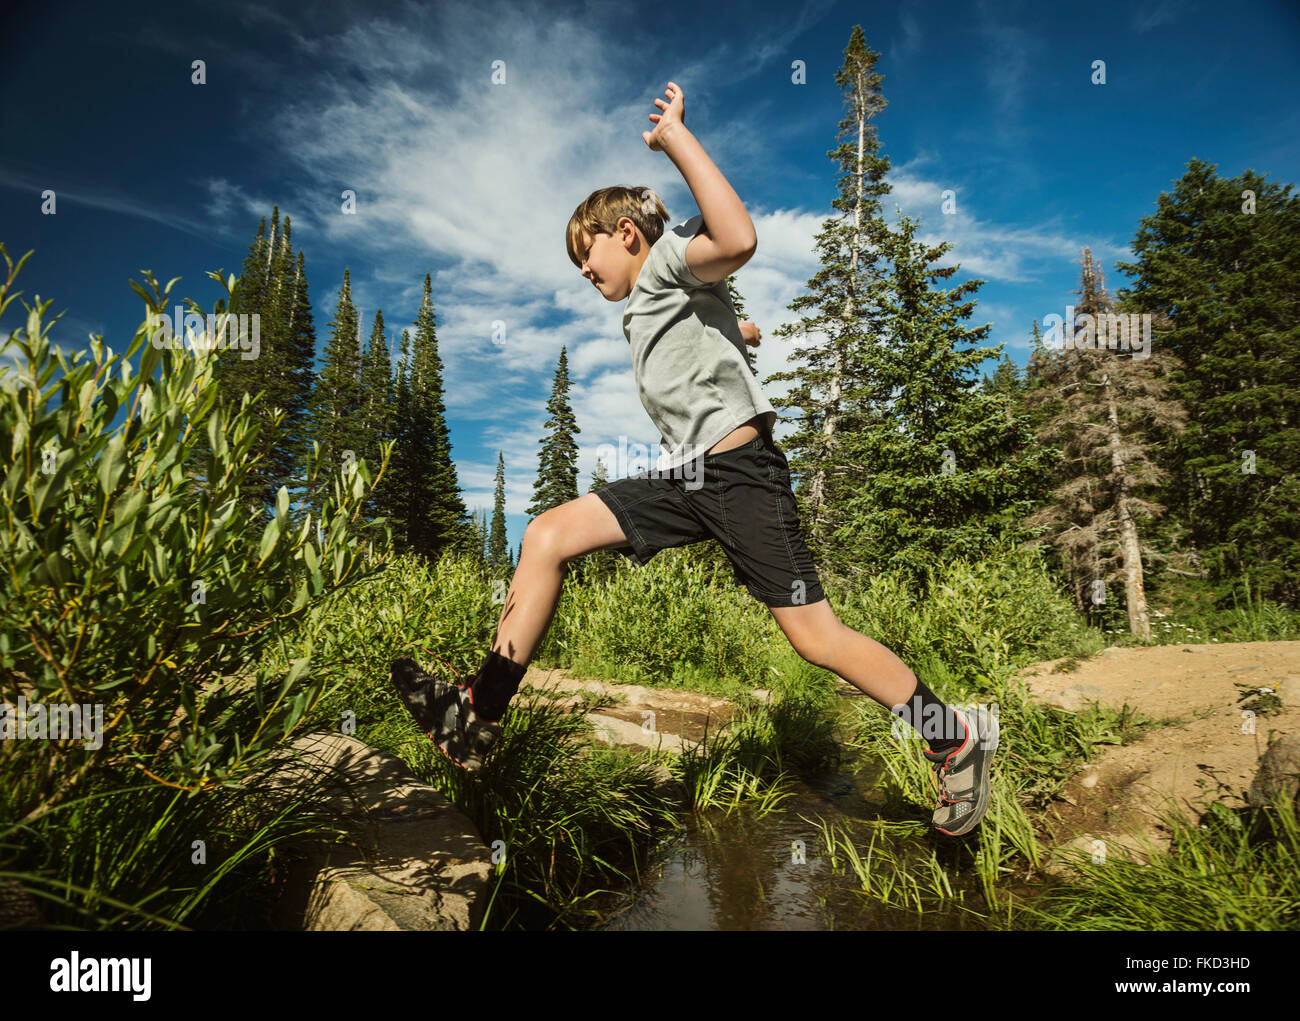 Junge (12-13) springen im Wald Stockfoto